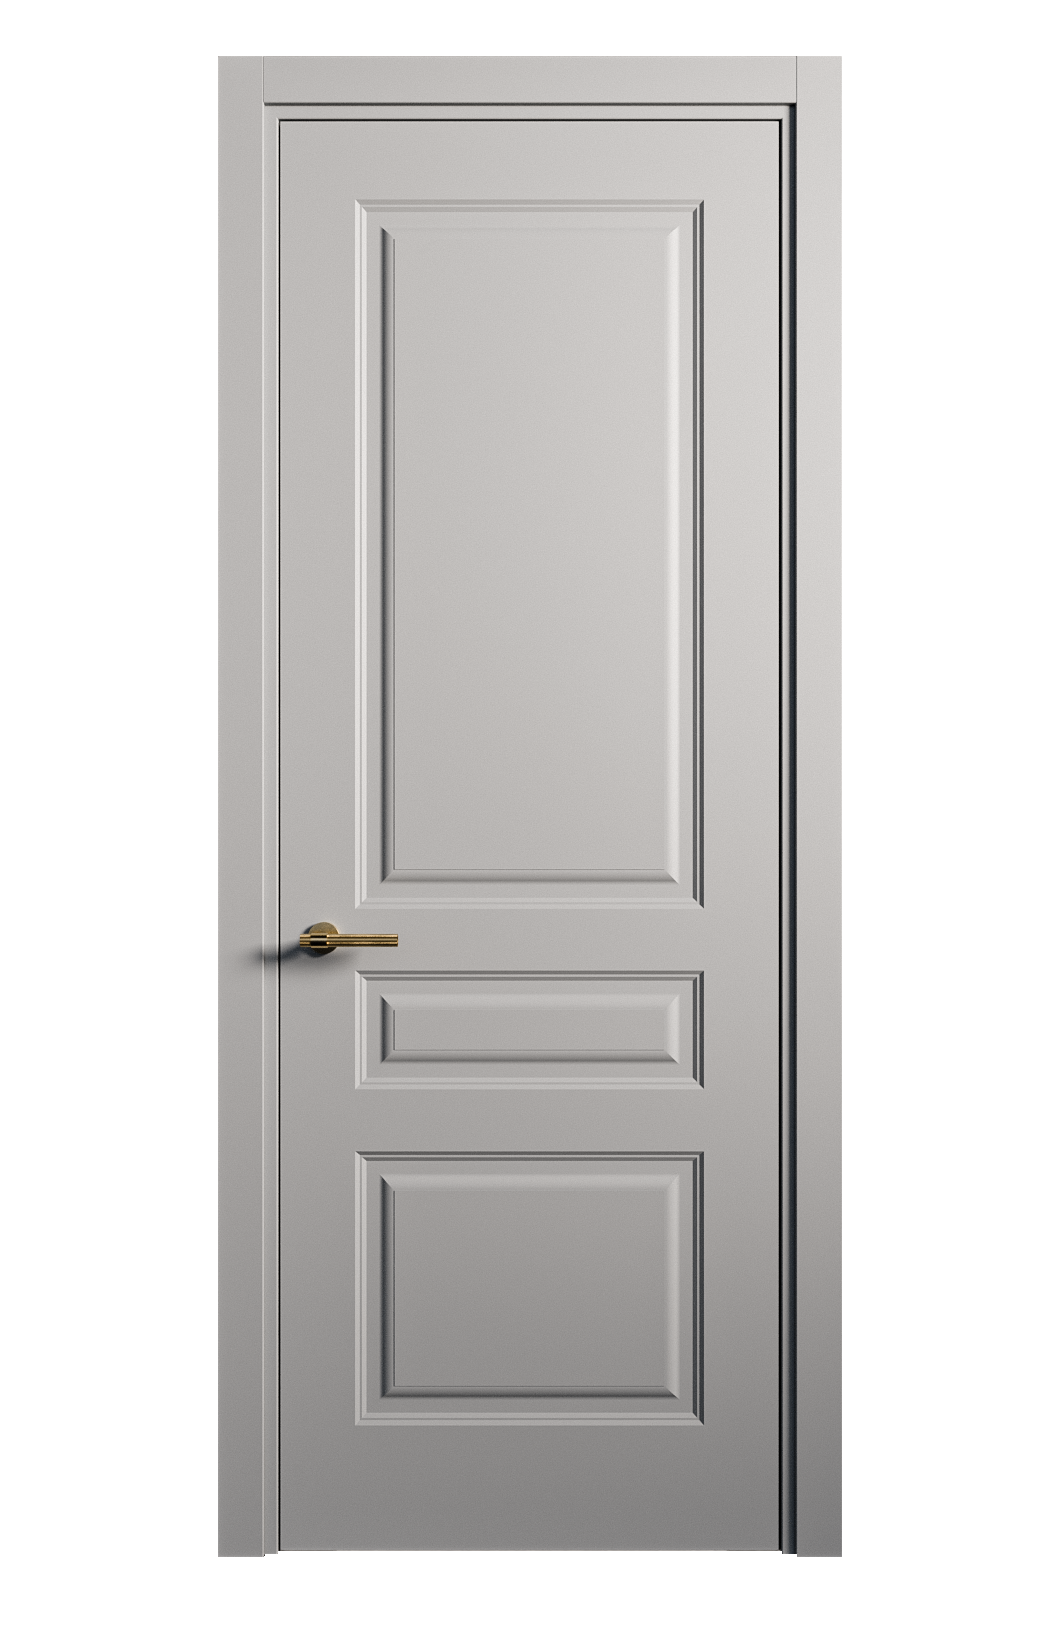 Межкомнатная дверь Вита-2 глухая эмаль ral 7040 26393